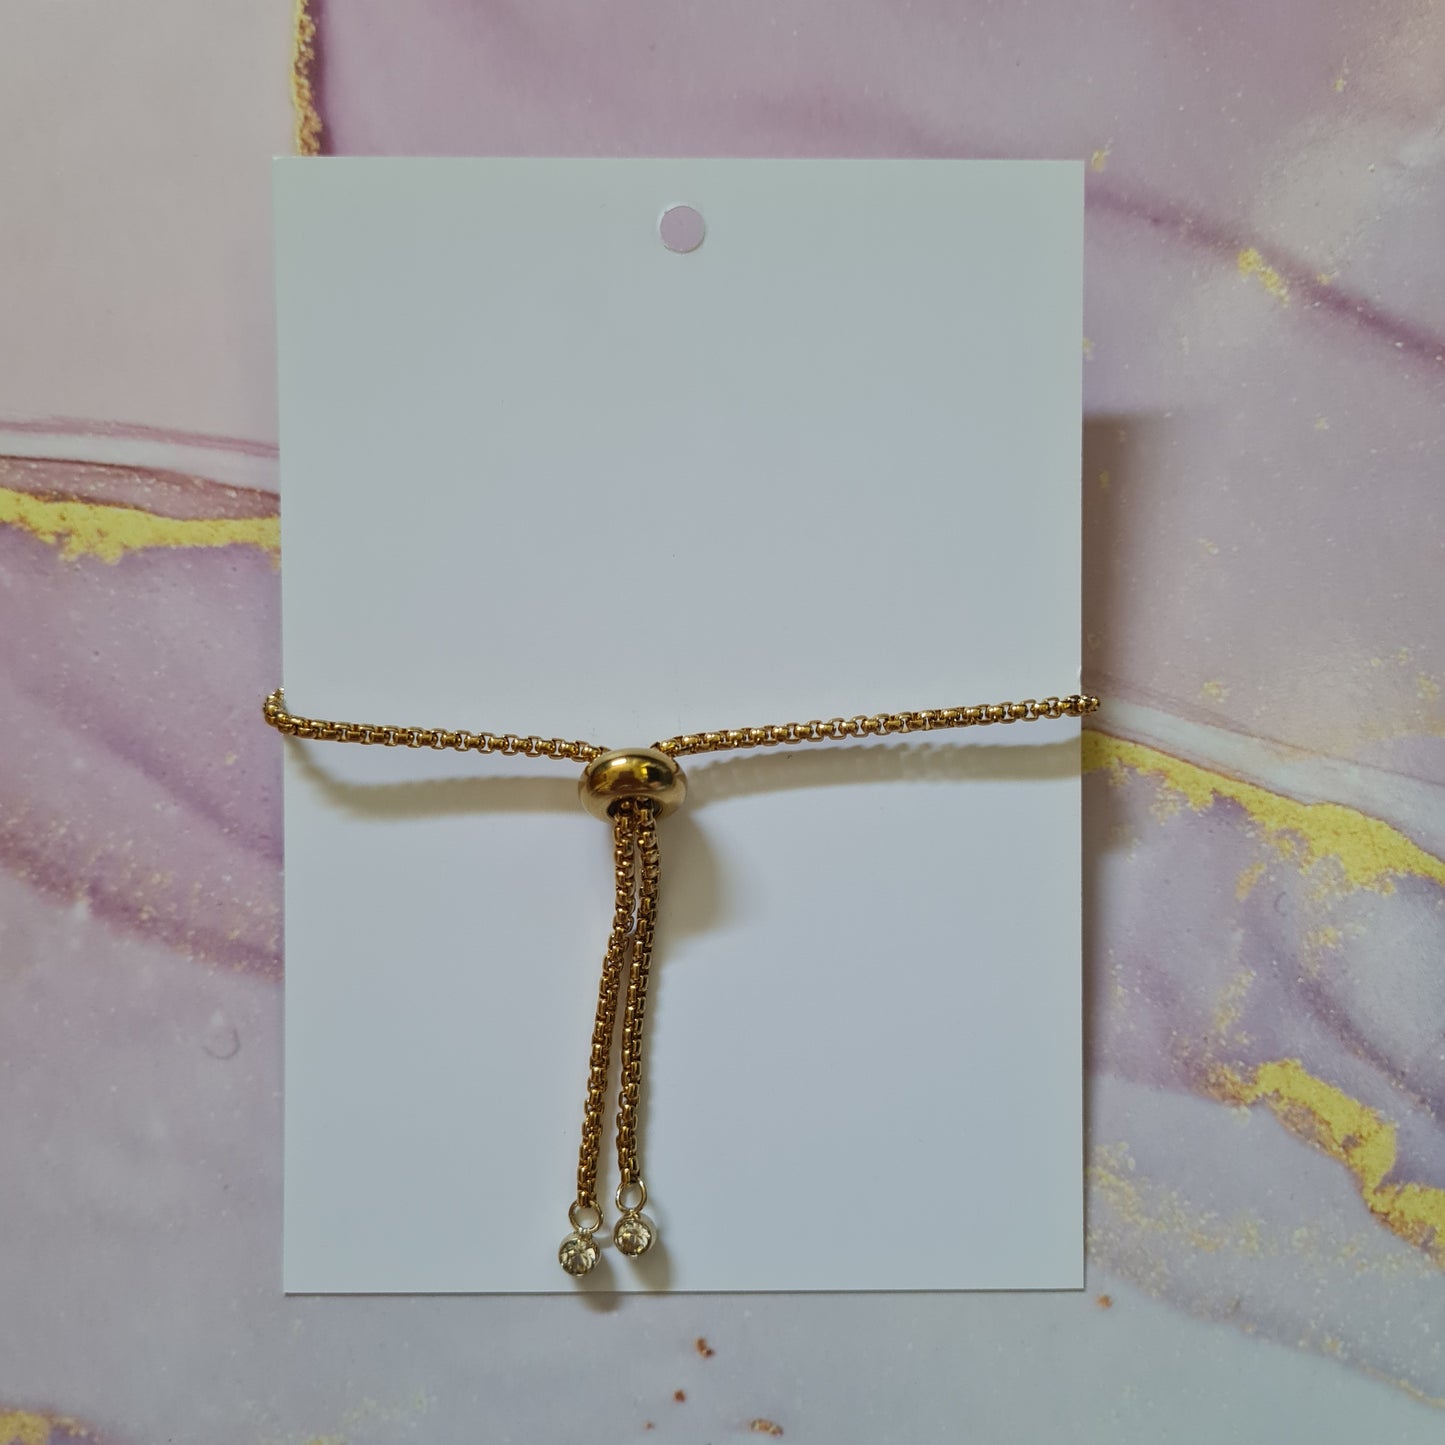 Swarovski Sparkle Bracelet - gold